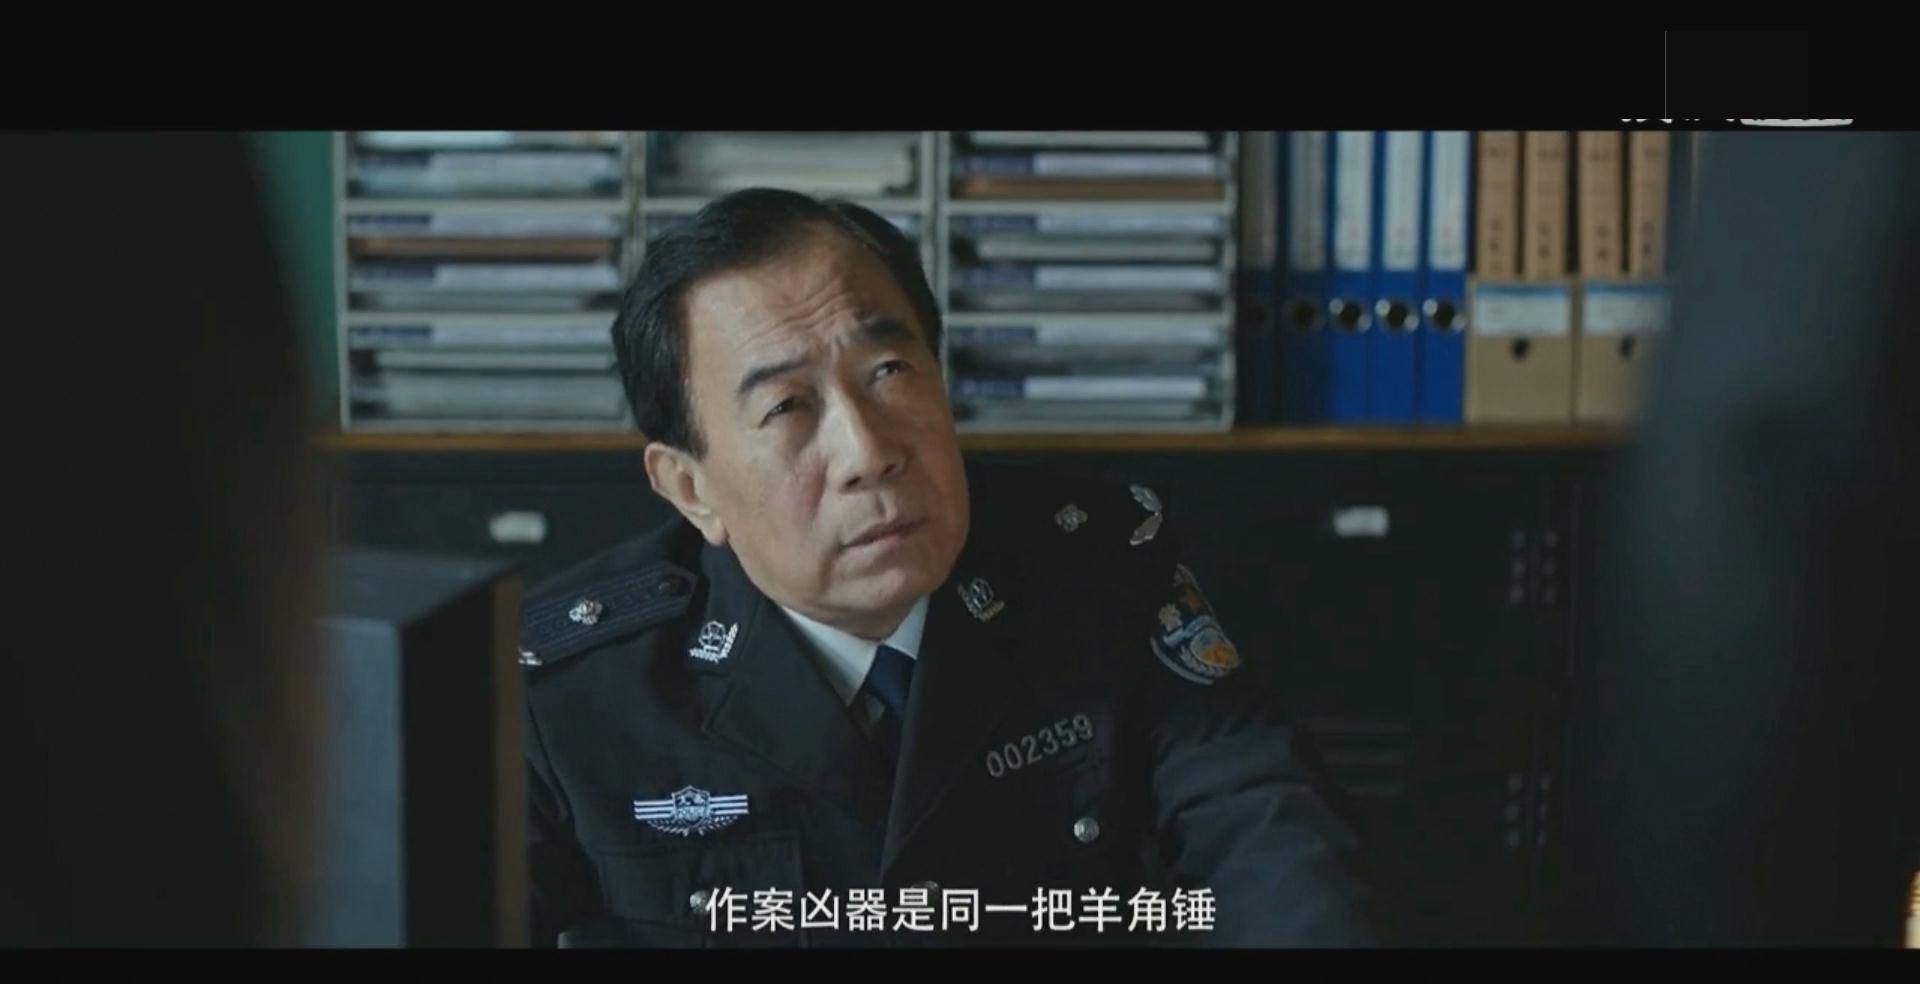 荧幕上公安局长专业户,北京市公安局要武,他真是刑警,真是局长